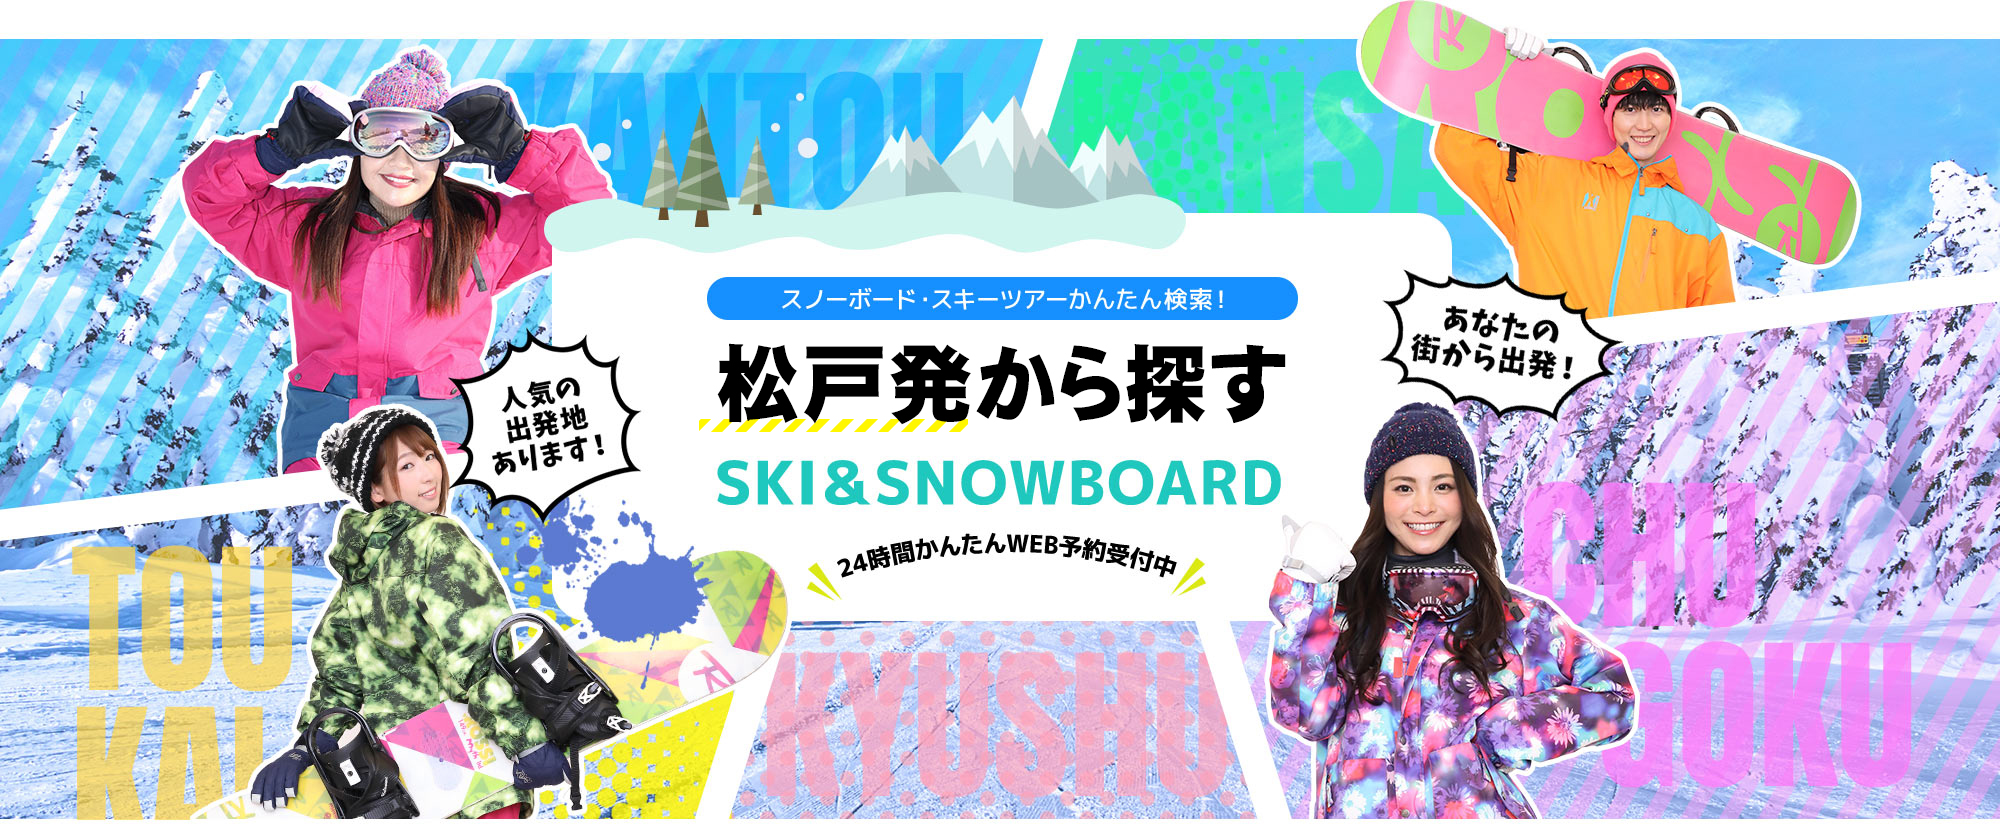 スノーボード・スキーツアーかんたん検索！ 松戸発から探す SKI&SNOWBOARD